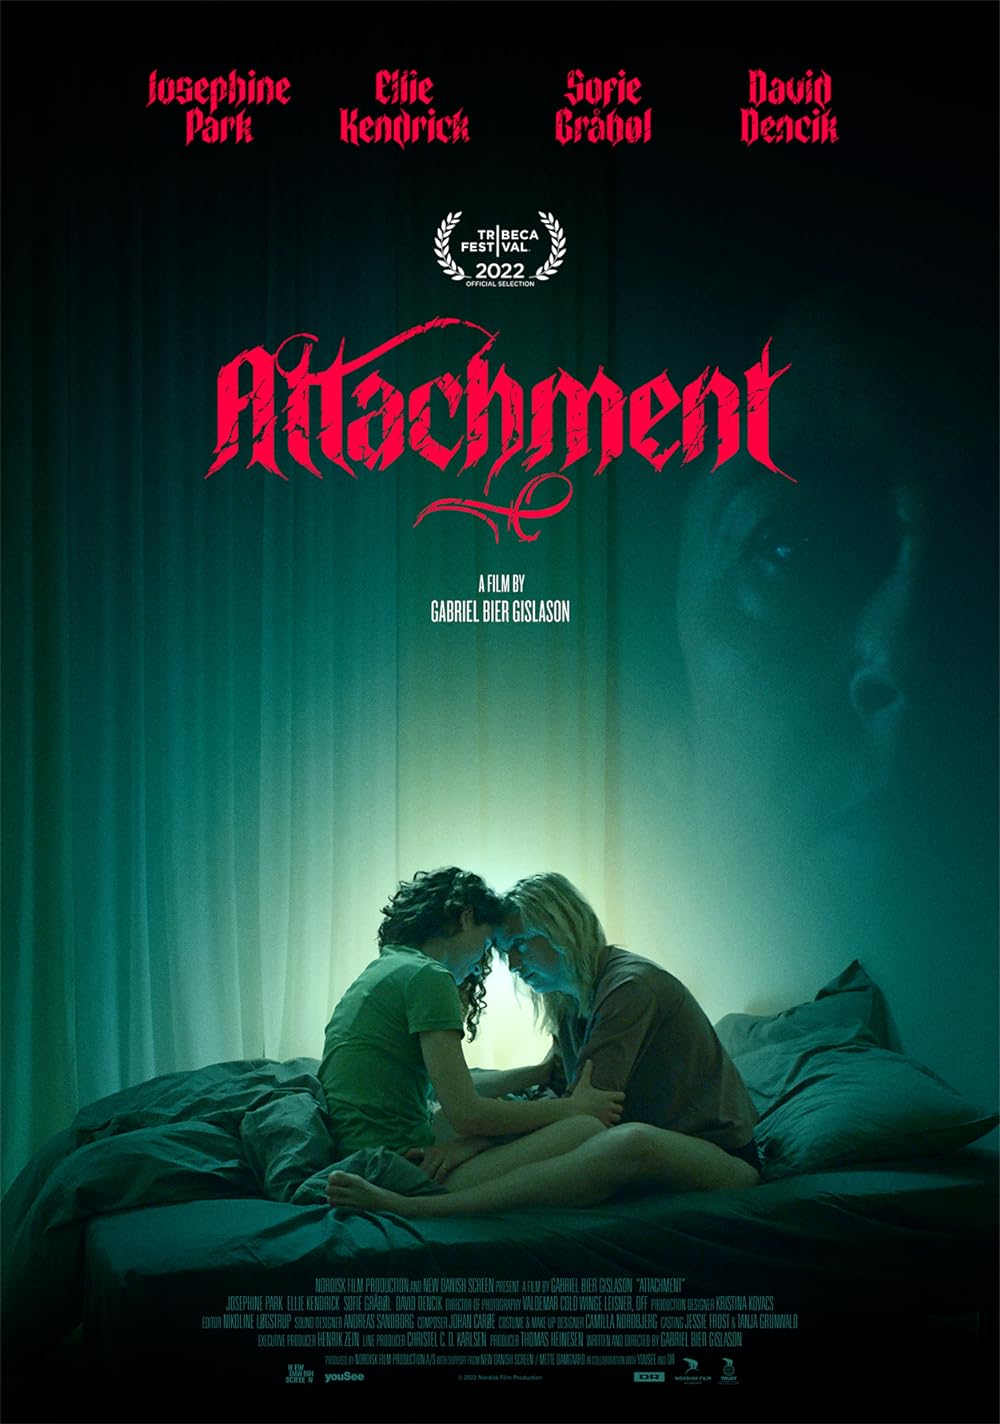 Post image: Attachment (2022)